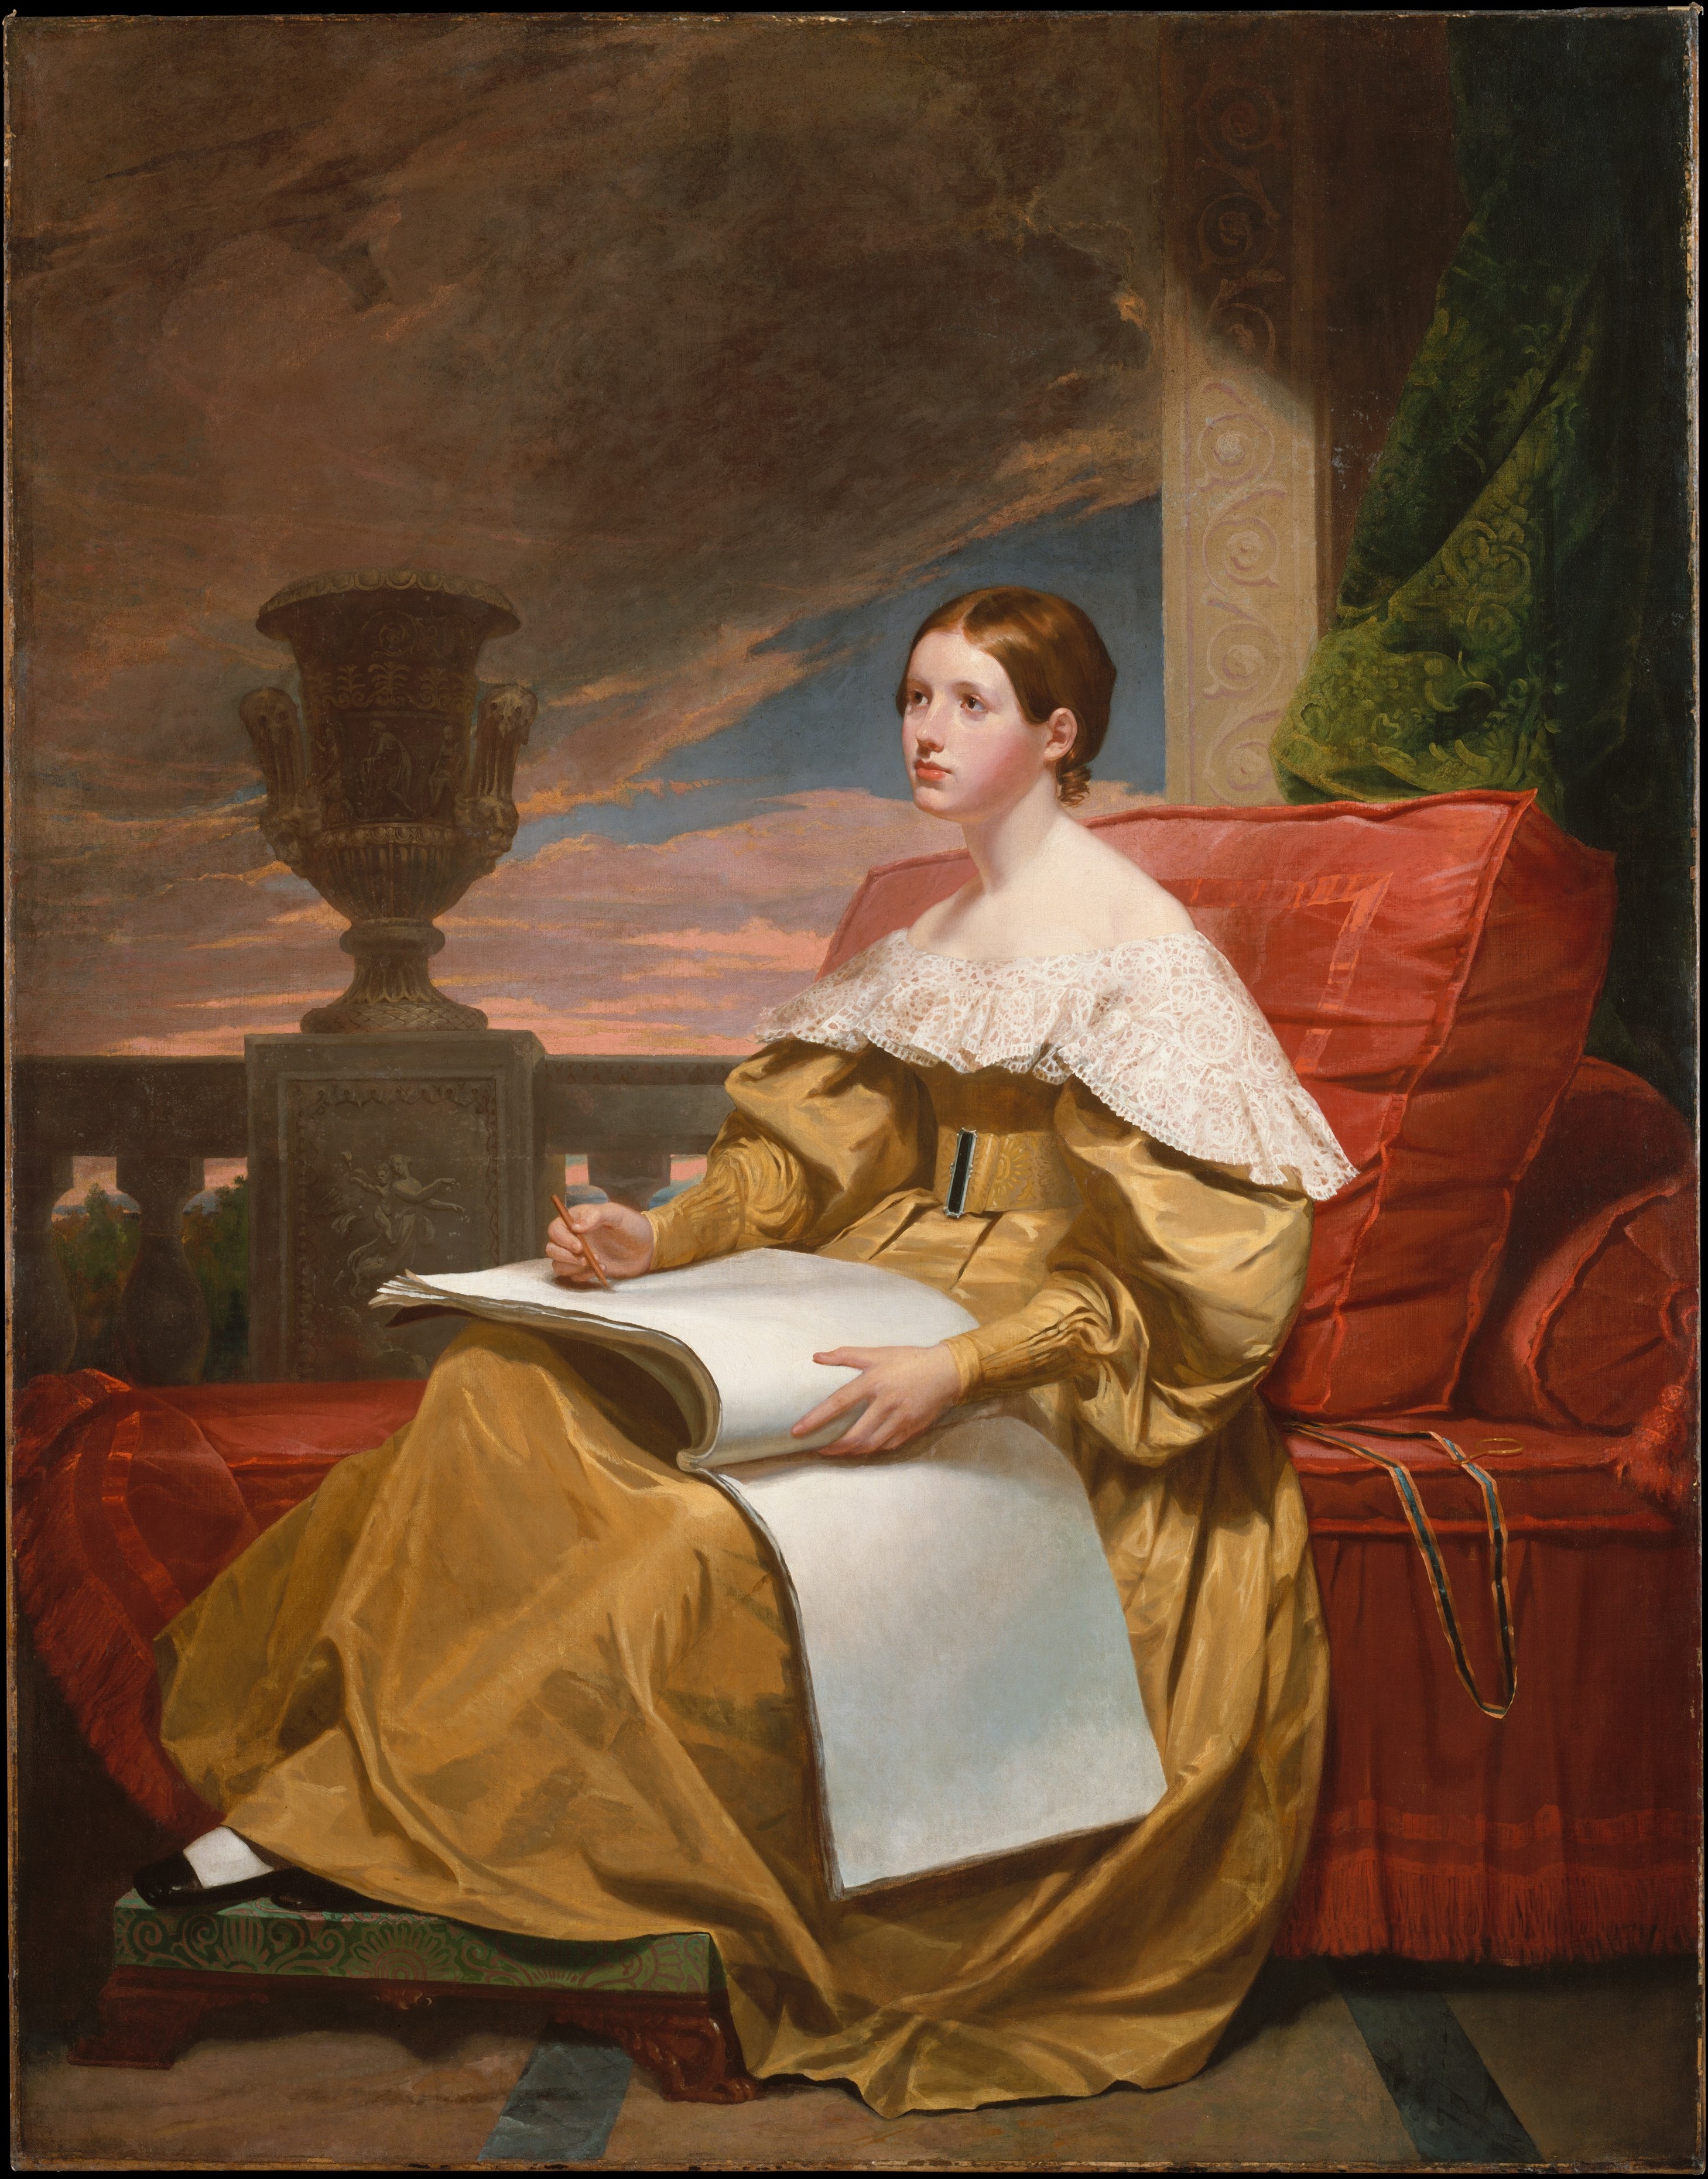 Susan Walker Morse (Die Muse) by Samuel F. B. Morse - ca. 1836–37 - 187.3 x 146.4 cm Metropolitan Museum of Art